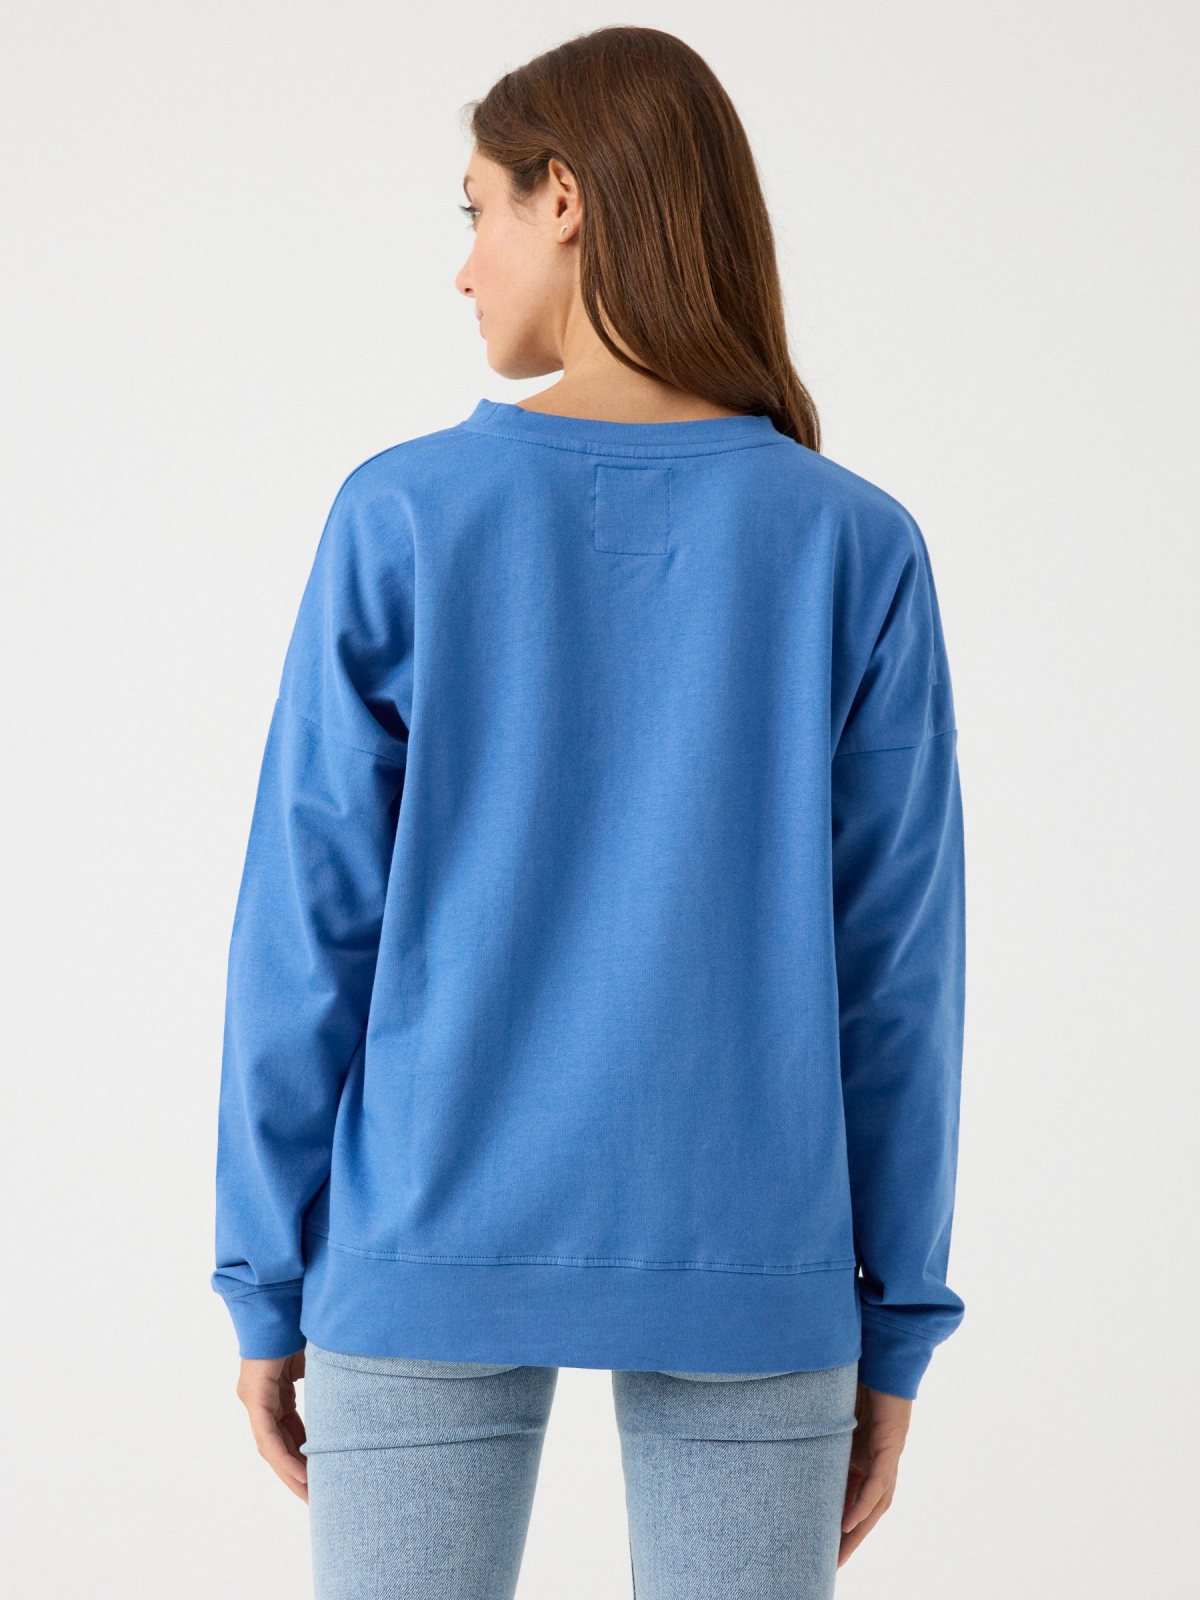 Basic round neck sweatshirt blue middle back view